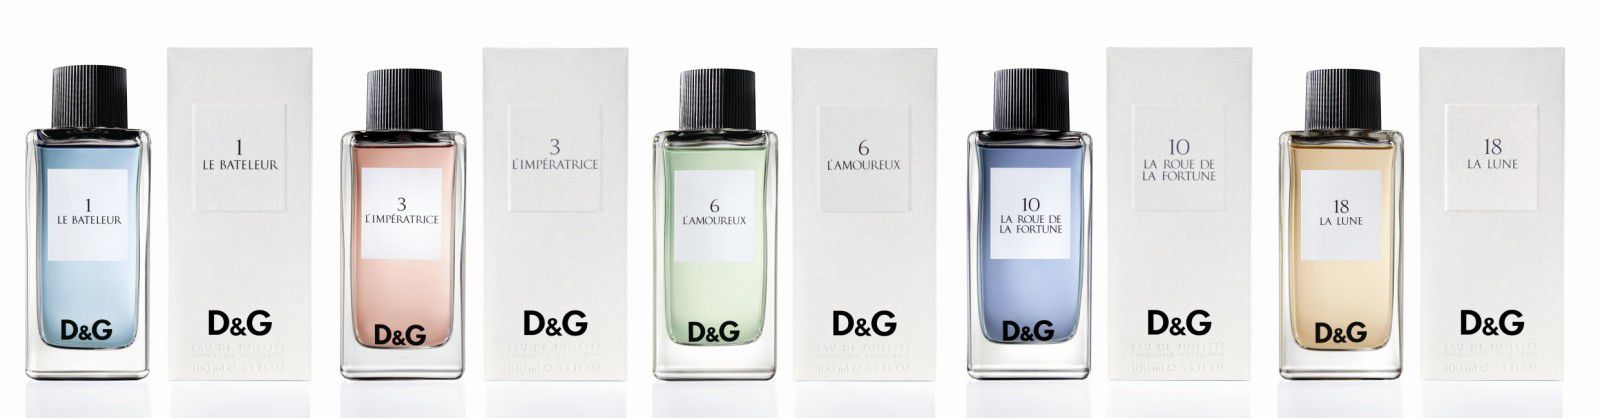 Collection de parfums par Dolce & Gabbana et Ego Facto - Le blog d'Anne  Thoumieux